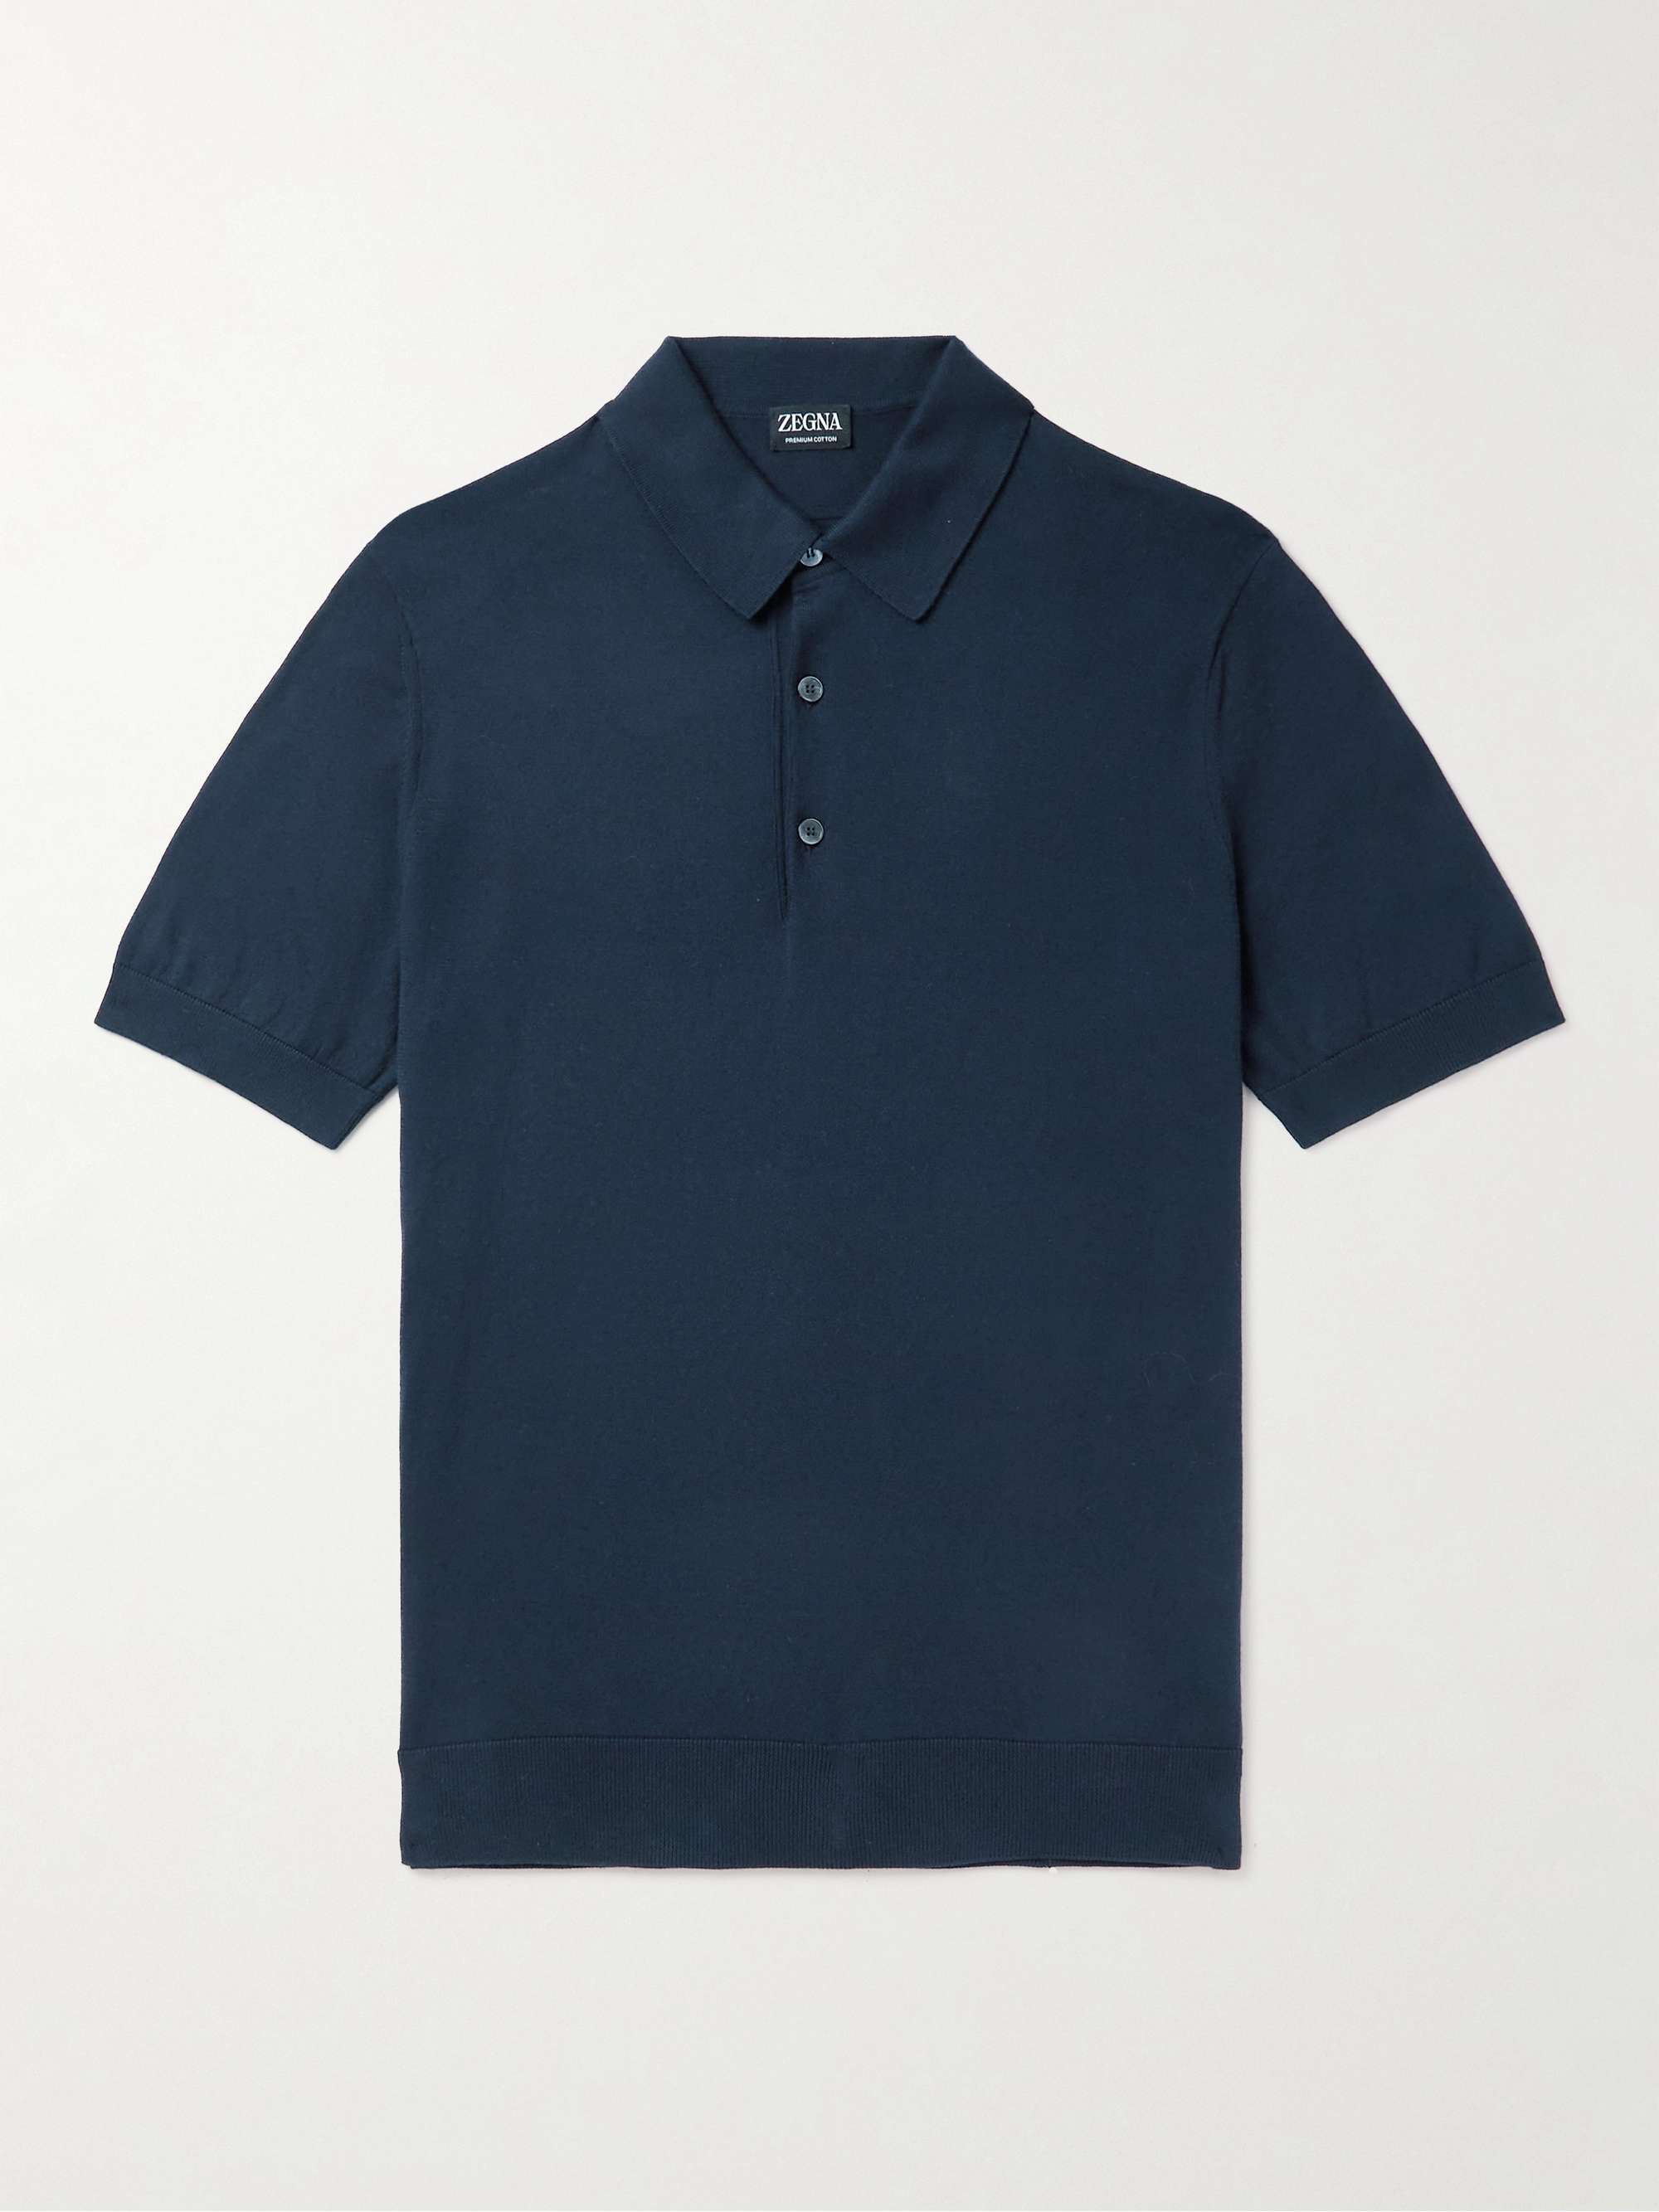 Navy Cotton Polo Shirt | ZEGNA | MR PORTER